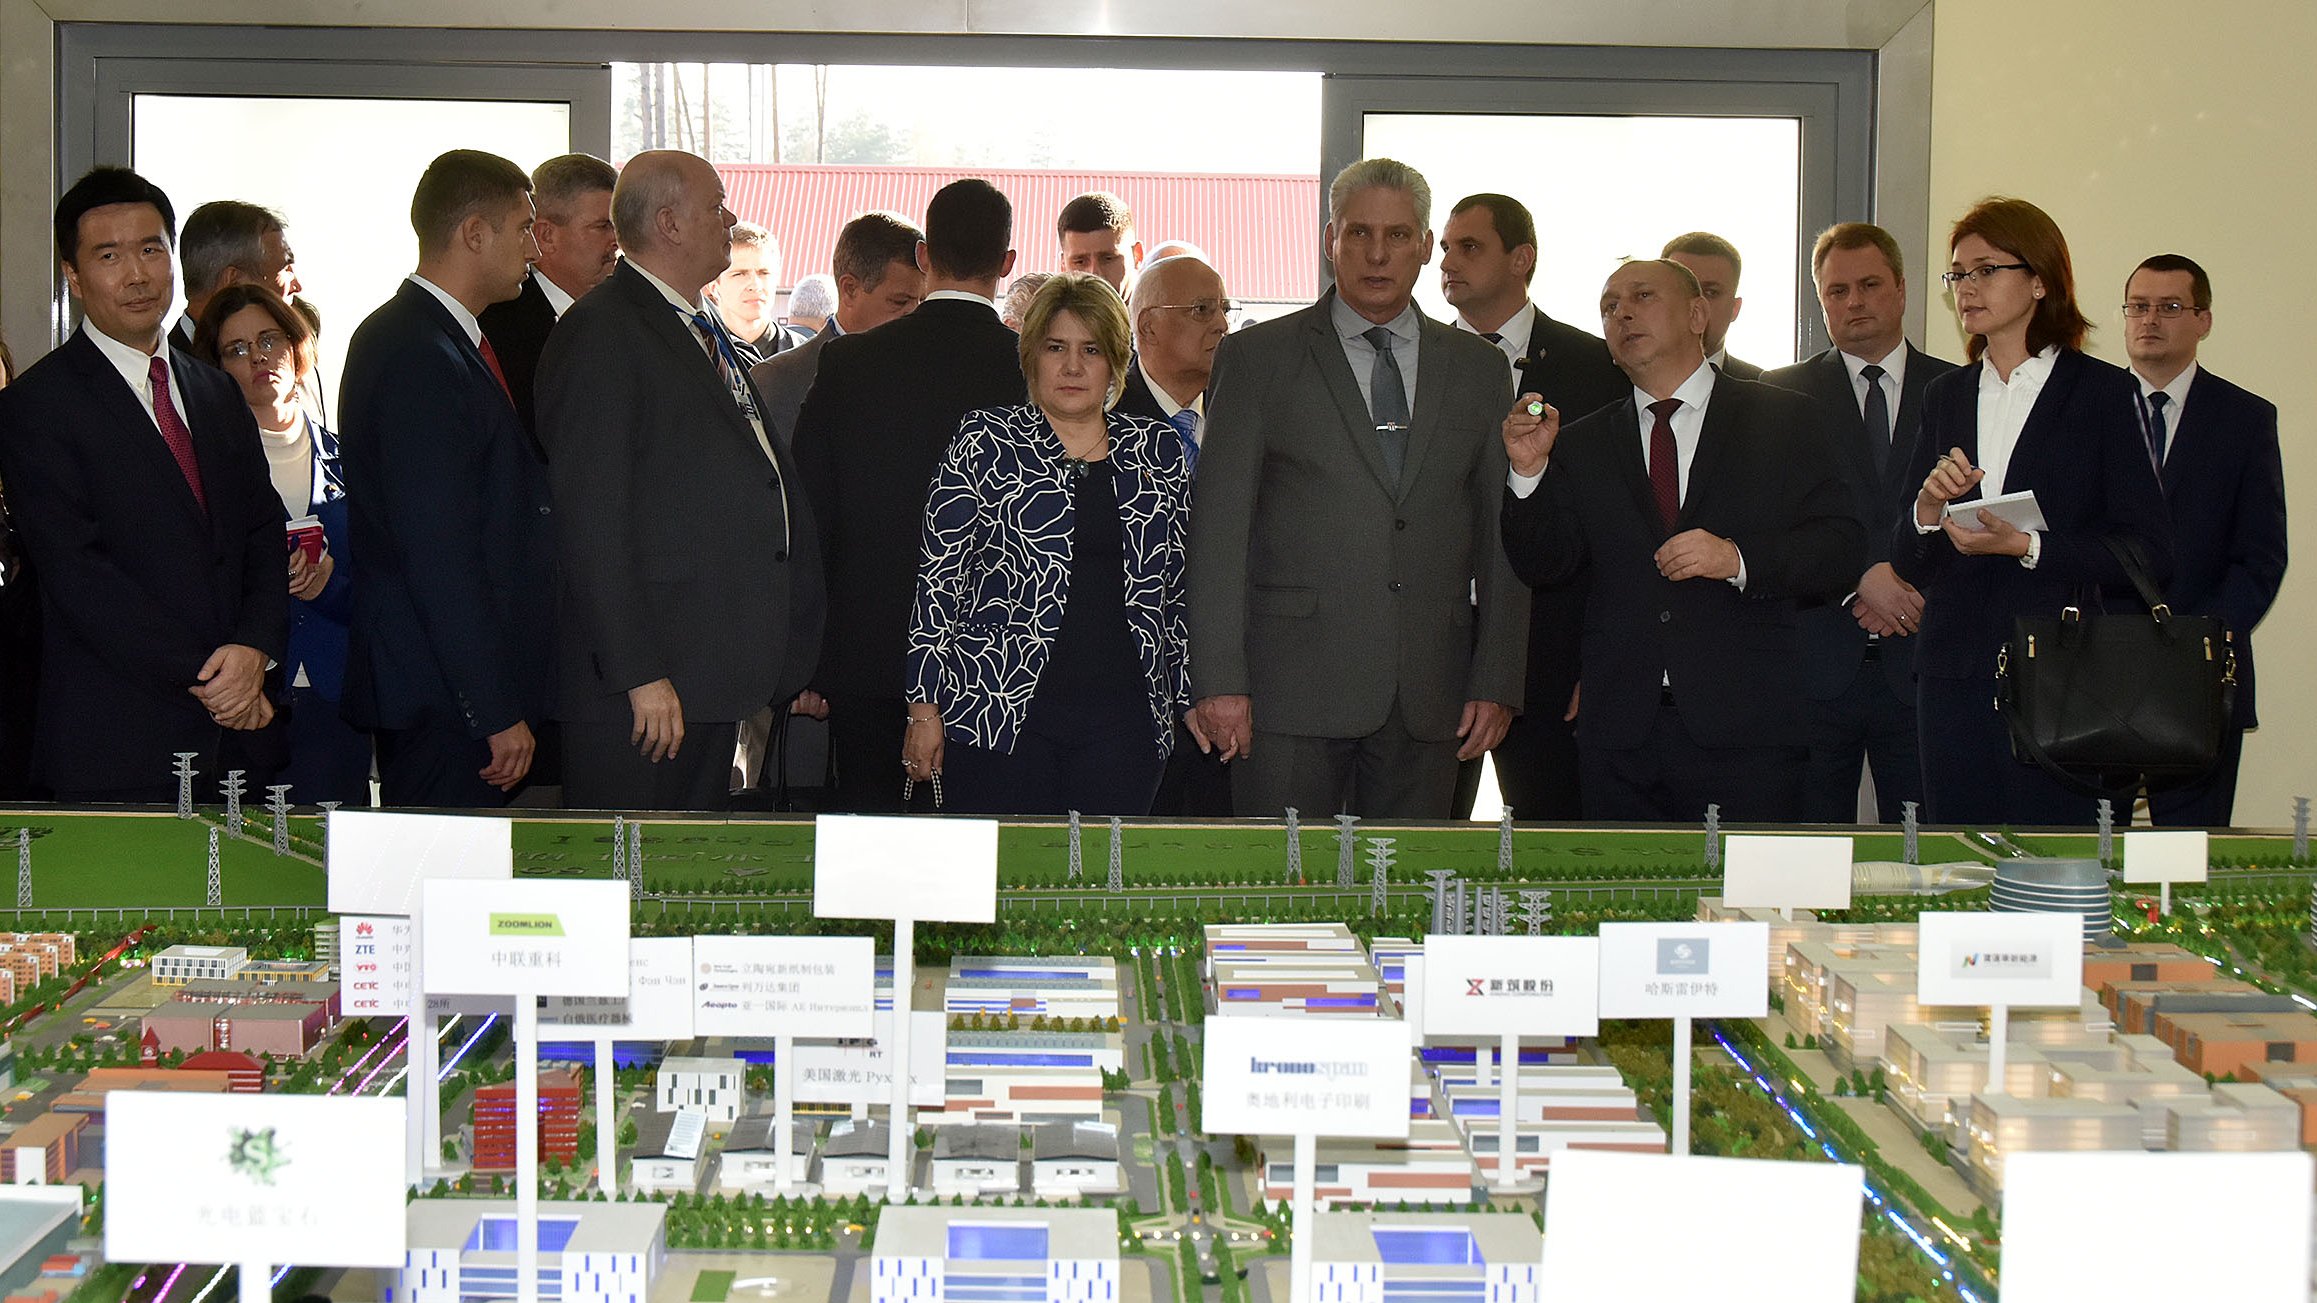 El Parque industrial Great Stone y la ZED-Mariel emulan, pero se complementan. Díaz-Canel se interesó por conocer los conceptos y desarrollos que se llevan a cabo en el enclave productivo chino-bielorruso, situado a 25 km de Minsk.